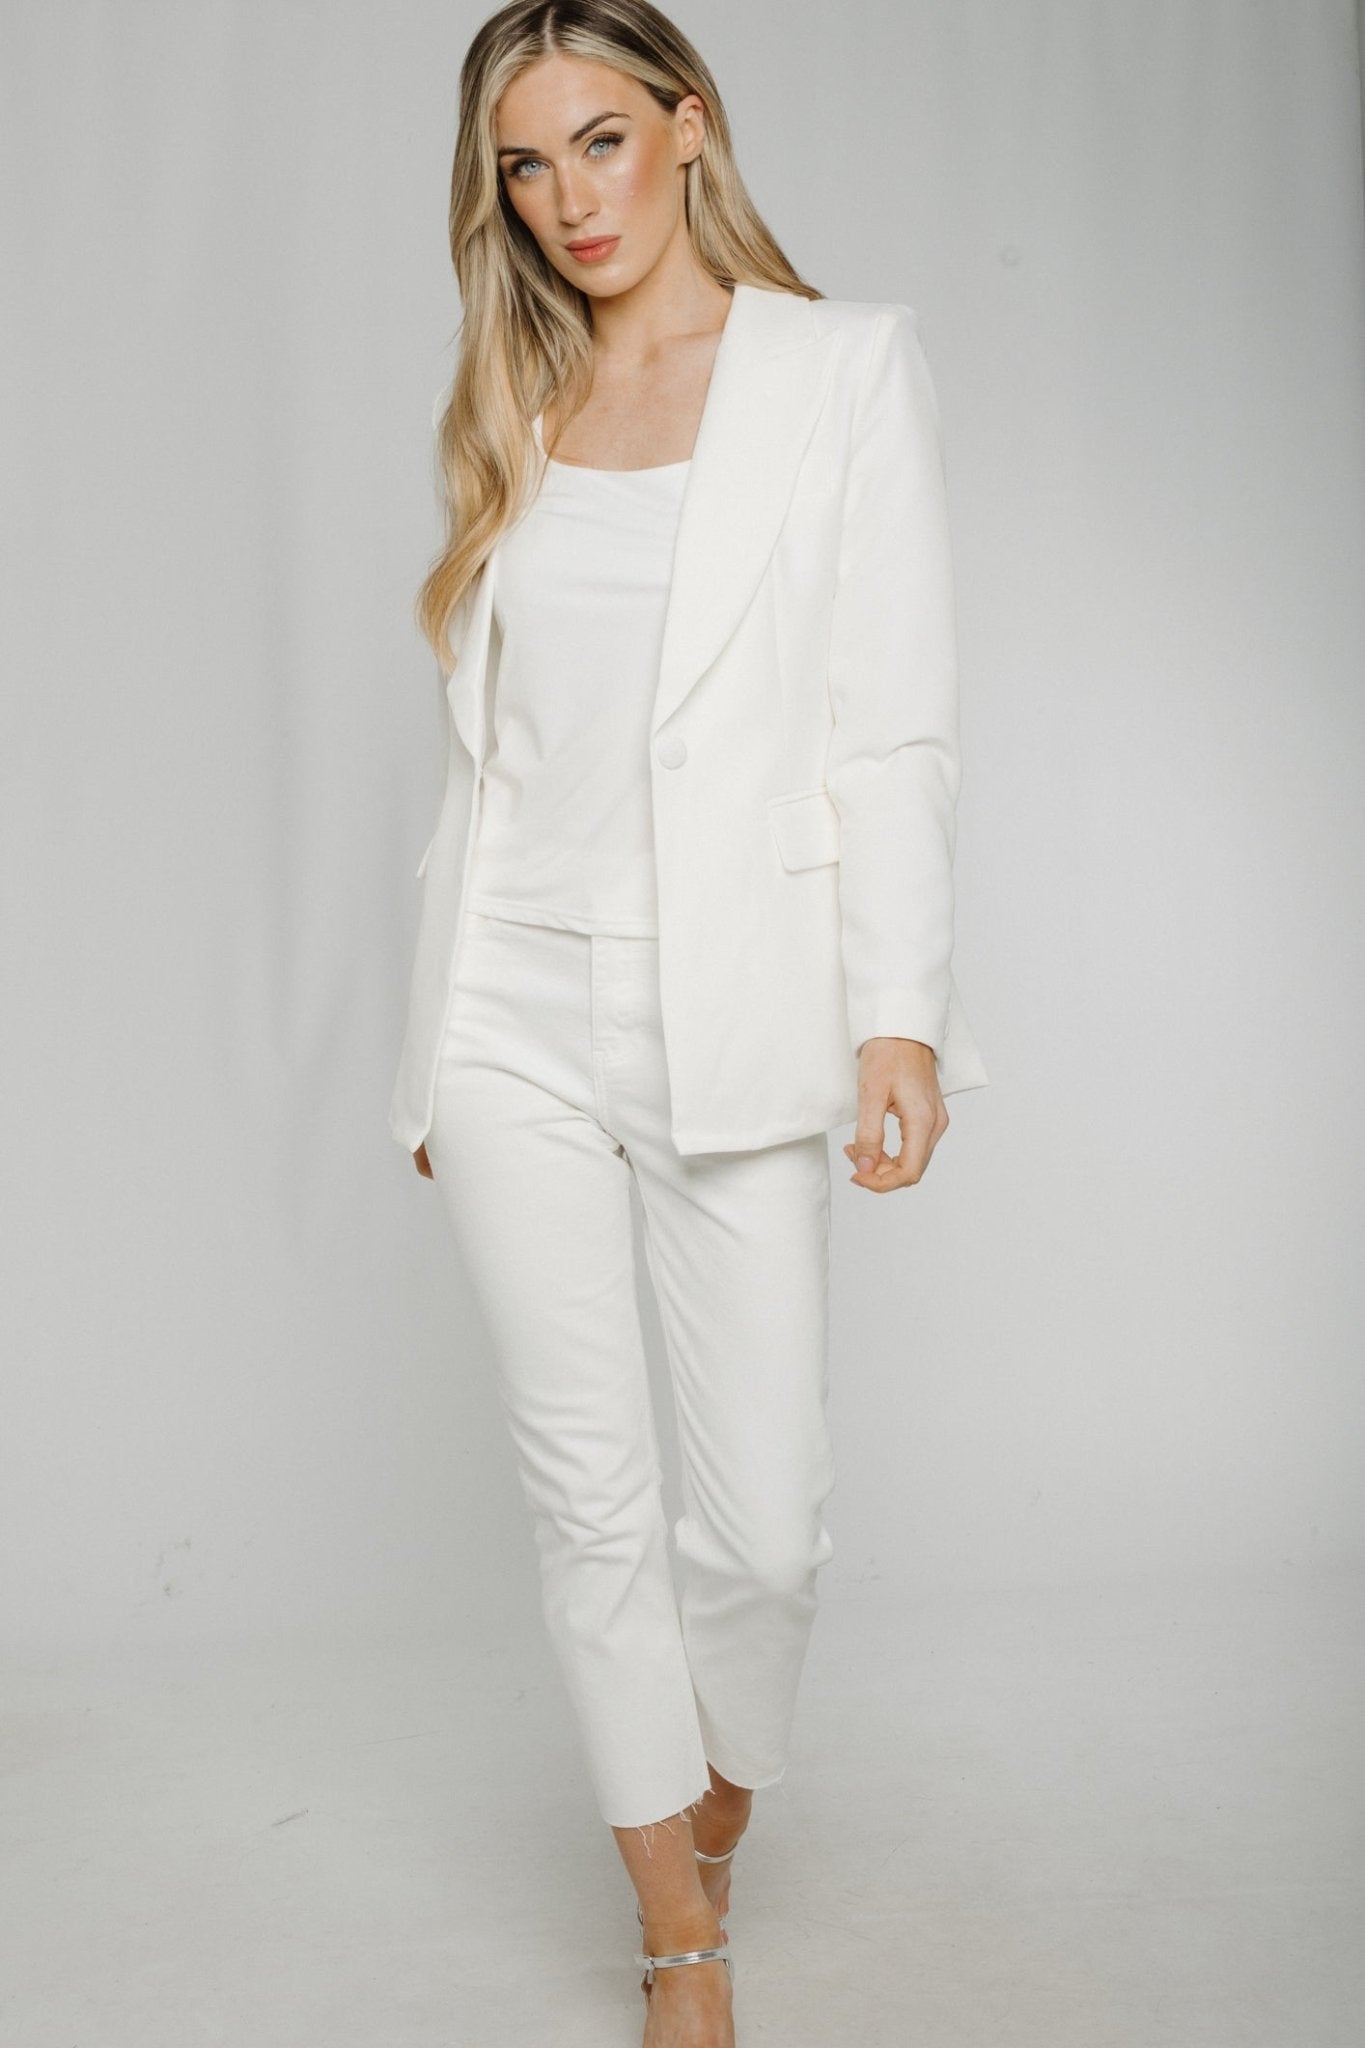 Arabella Blazer In White - The Walk in Wardrobe